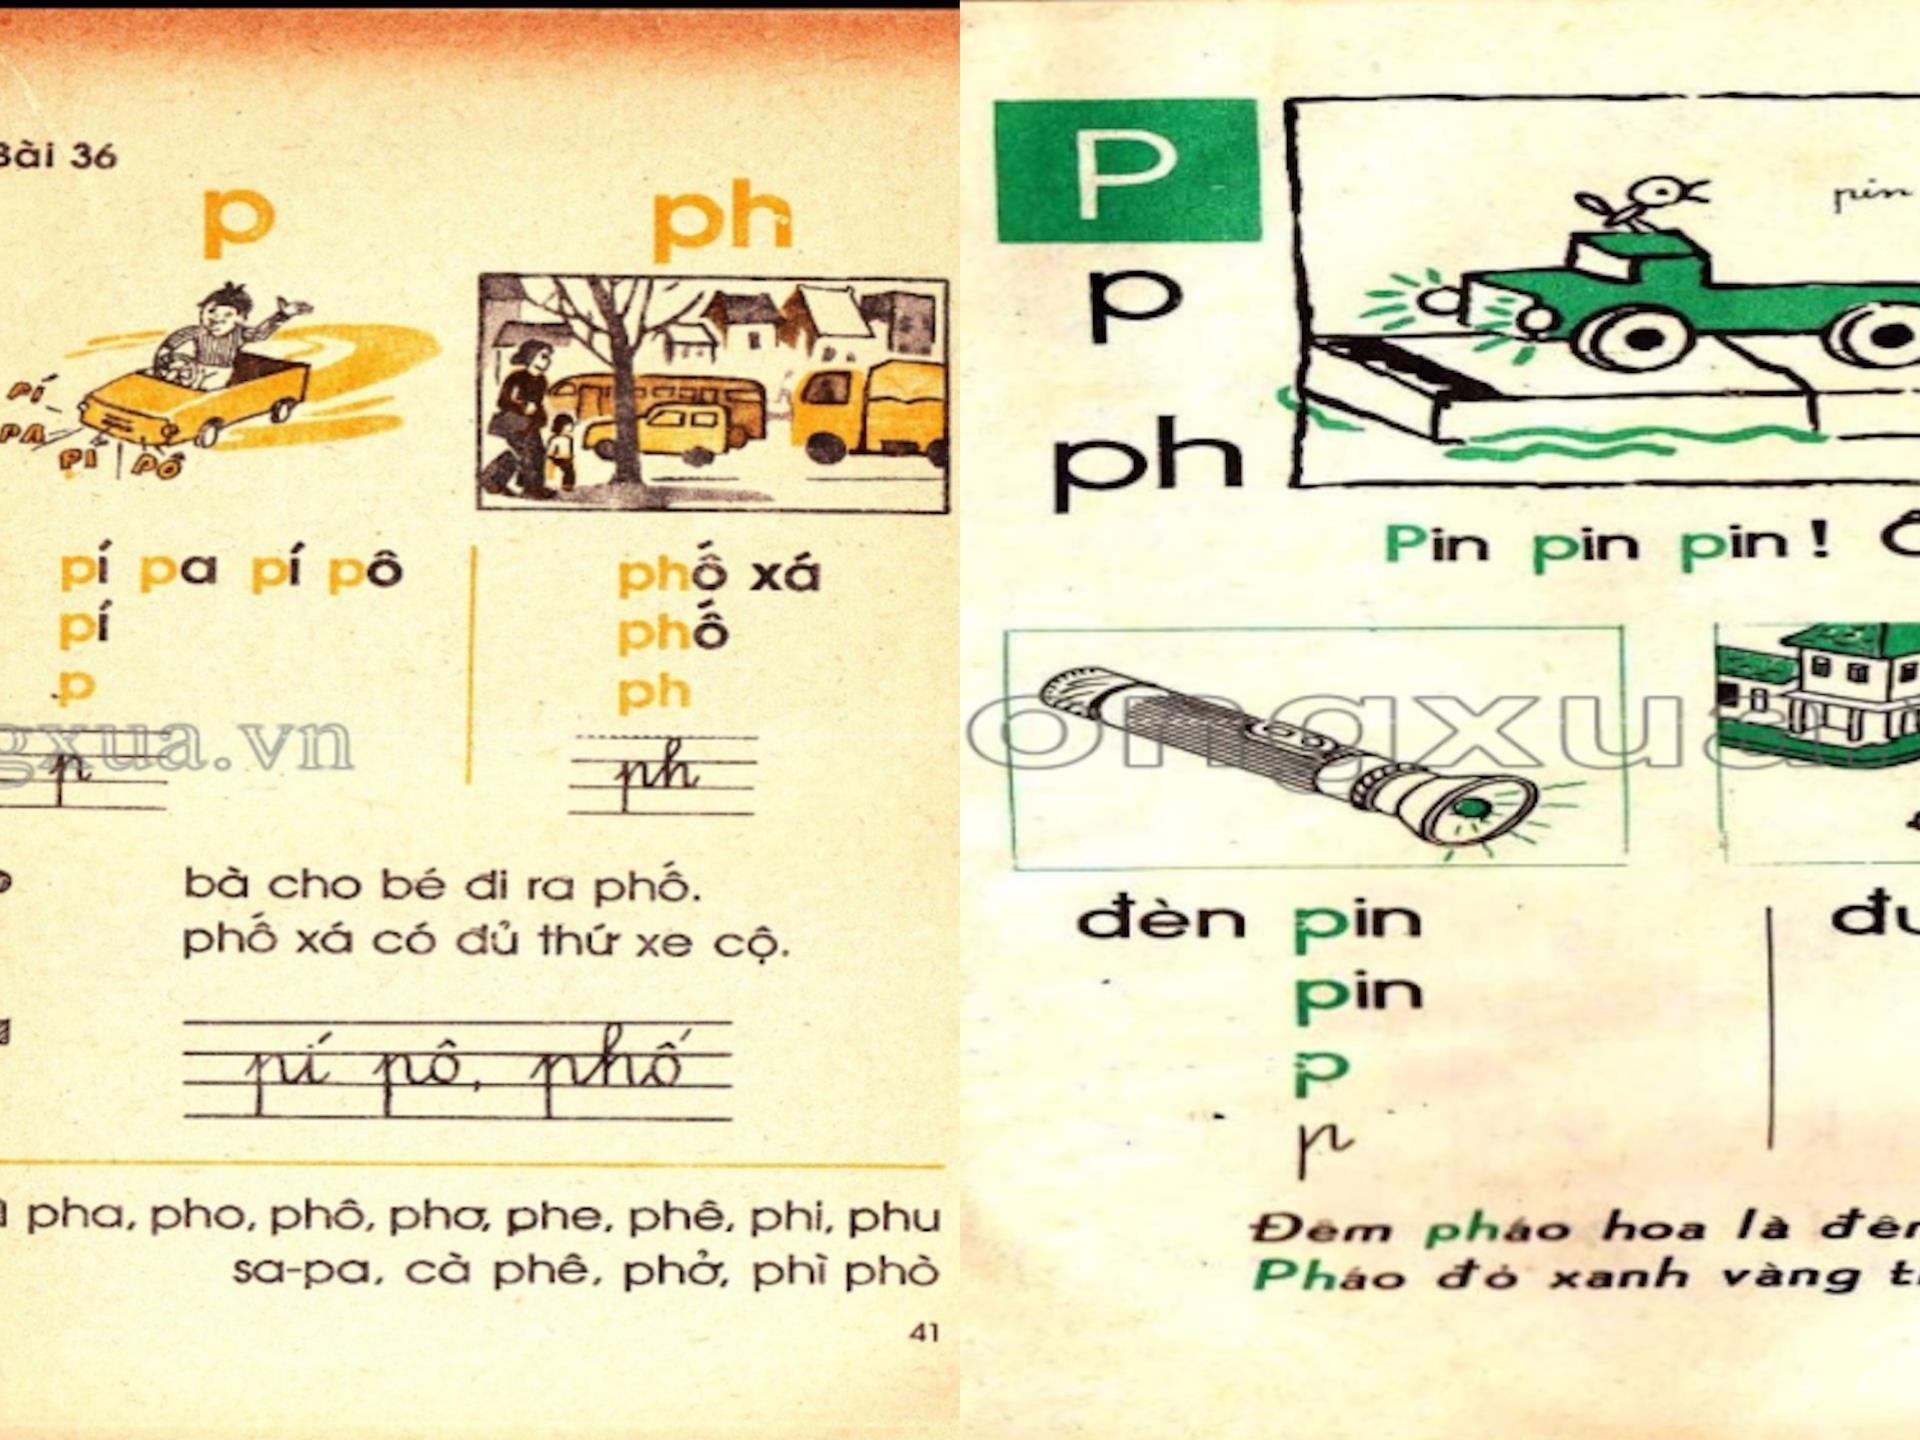 Tiếng Việt 1 không dạy chữ P: 'Cải tiến hoá cải lùi, sai lầm nghiêm trọng' - 2